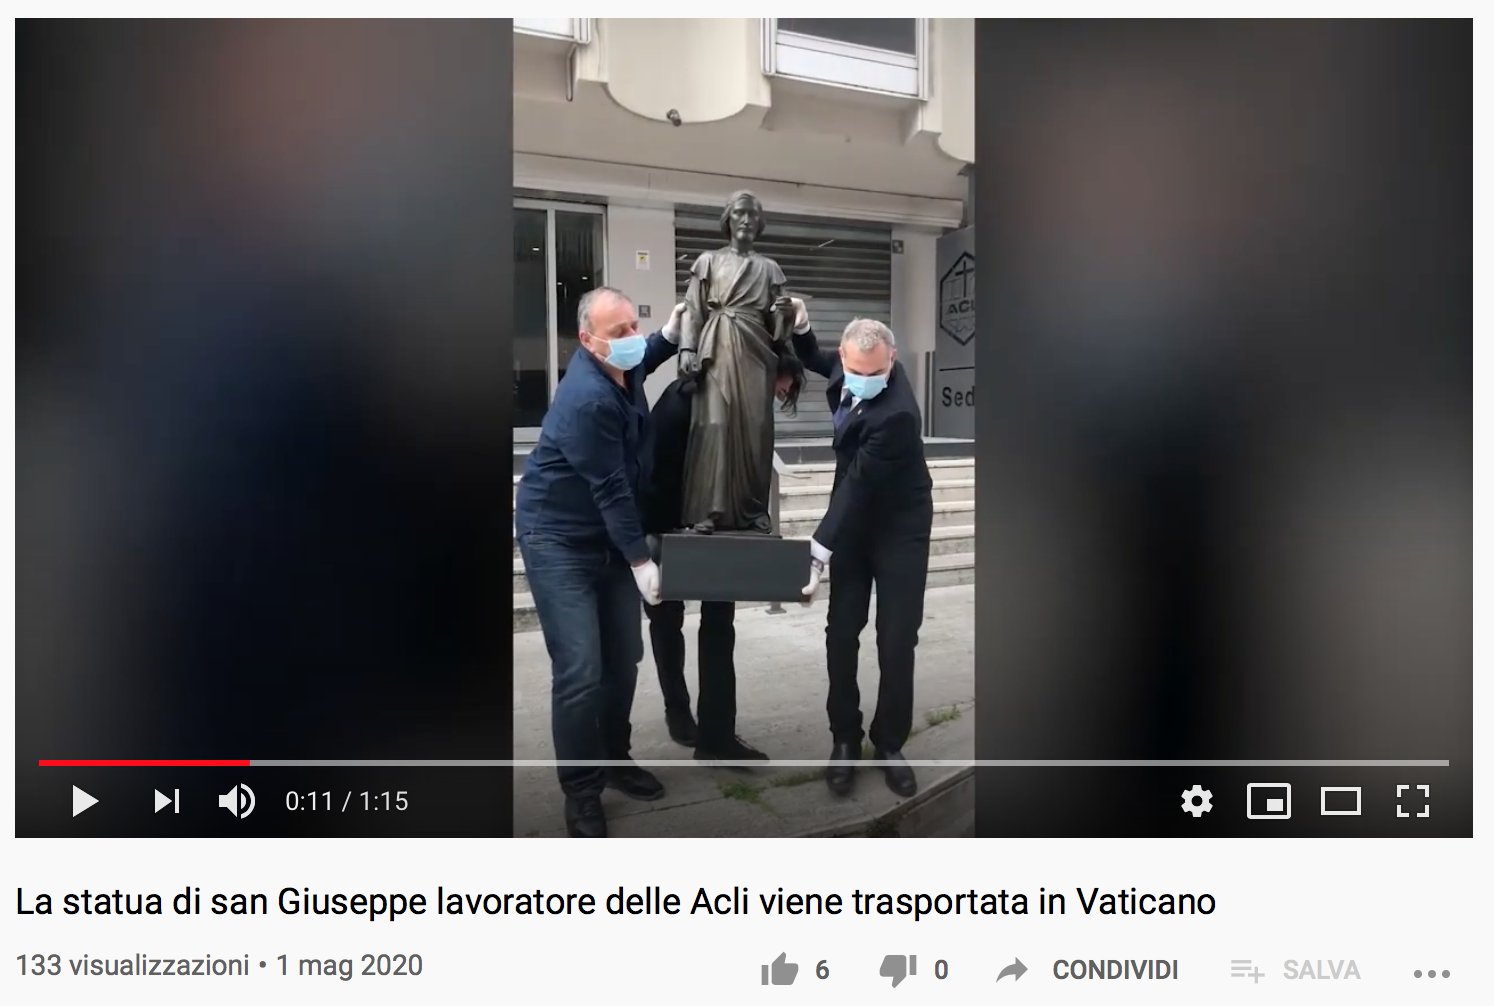 1° Maggio 2020: La statua di san Giuseppe lavoratore delle Acli viene trasportata in Vaticano